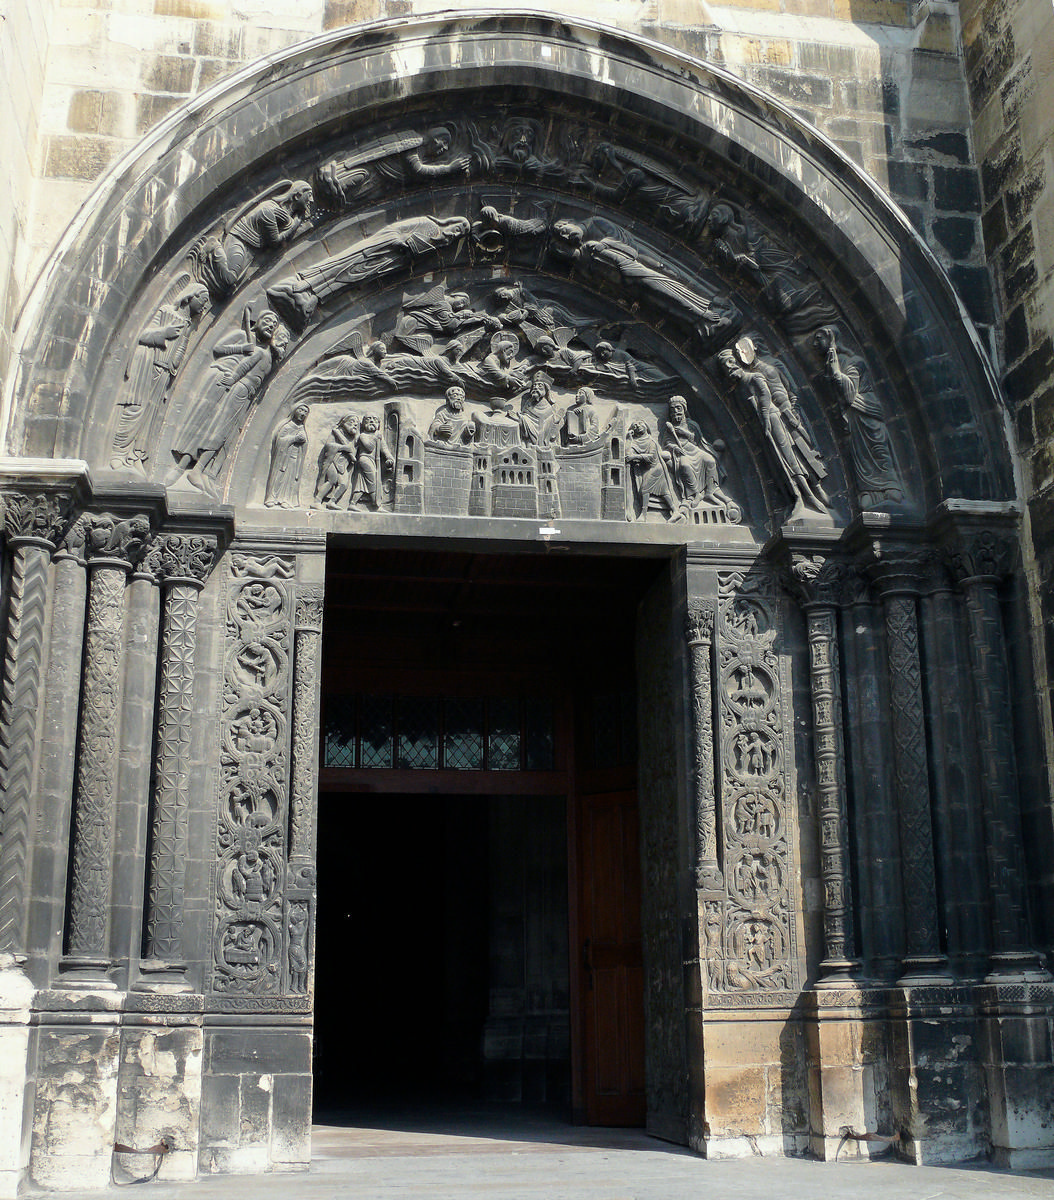 Fiche média no. 144447 Saint-Denis - Basilique de Saint-Denis - Portail de droite: tympan montrant la dernière communion de saint Denis, sur le piédroit de gauche, les signes du zodiaque, sur le piédroit de droite, les travaux et les mois